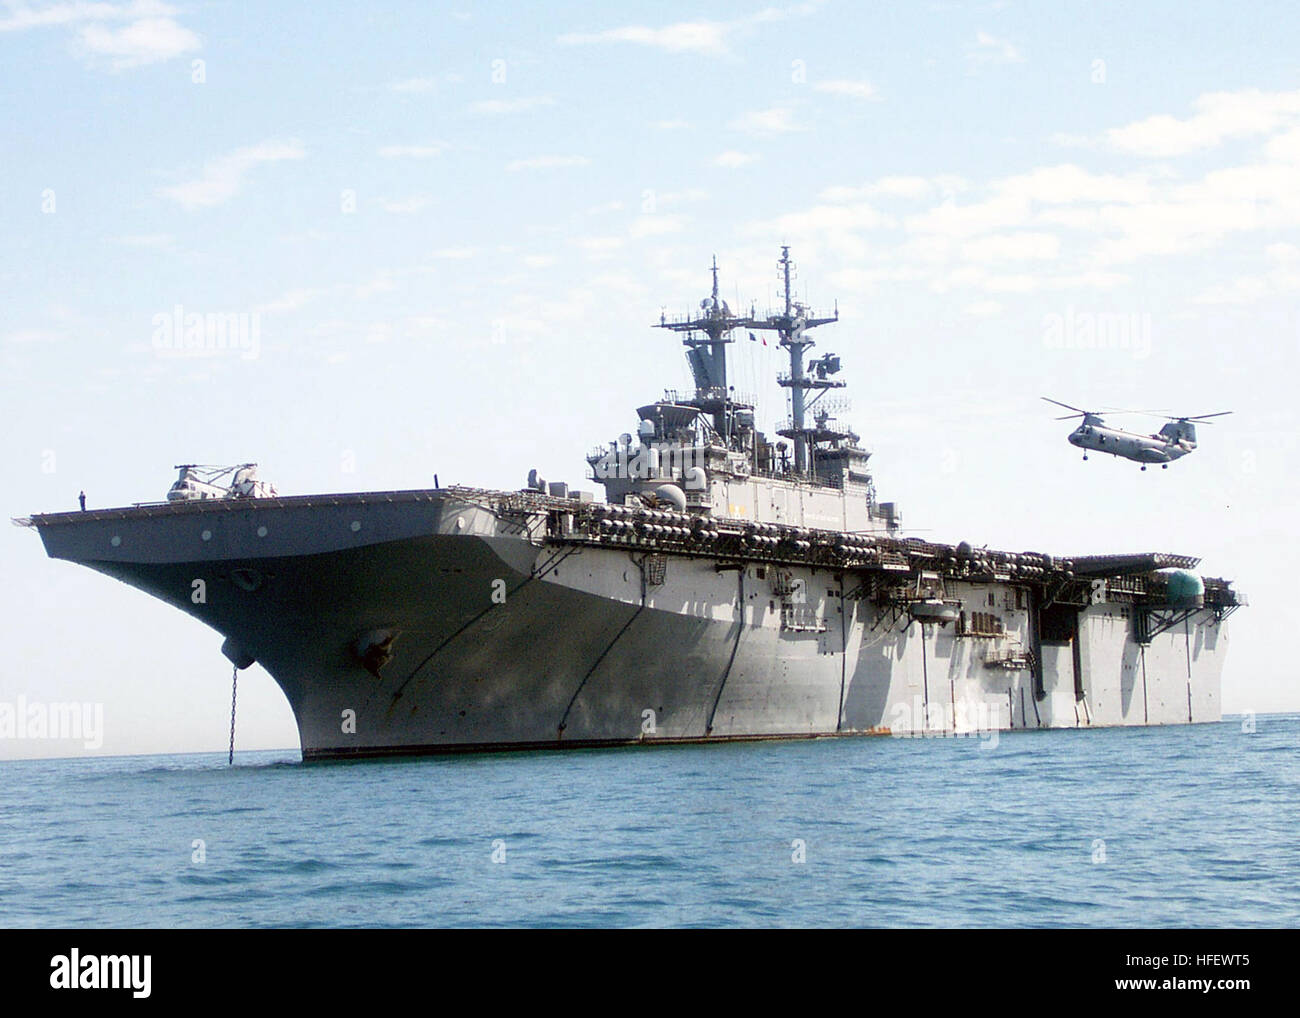 030216-N-1512S-129 auf hoher See mit USS Kearsarge (LHD-3) 16. Februar 2003--ist Kearsarge im Persischen Golf verankert, während der Durchführung einer Marine-Offload. Kearsarge wird derzeit als das Flaggschiff der Amphibious Task Force East (ATF-E) zur Unterstützung der Operation Enduring Freedom eingesetzt.  U.S. Navy Photo von PhotographerÕs Mate Airman Kenny Swartout. (FREIGEGEBEN) U.S. Navy 030216-N-1512S-129 Kearsarge verankert ist im Persischen Golf während der Durchführung einer Marine-offload Stockfoto